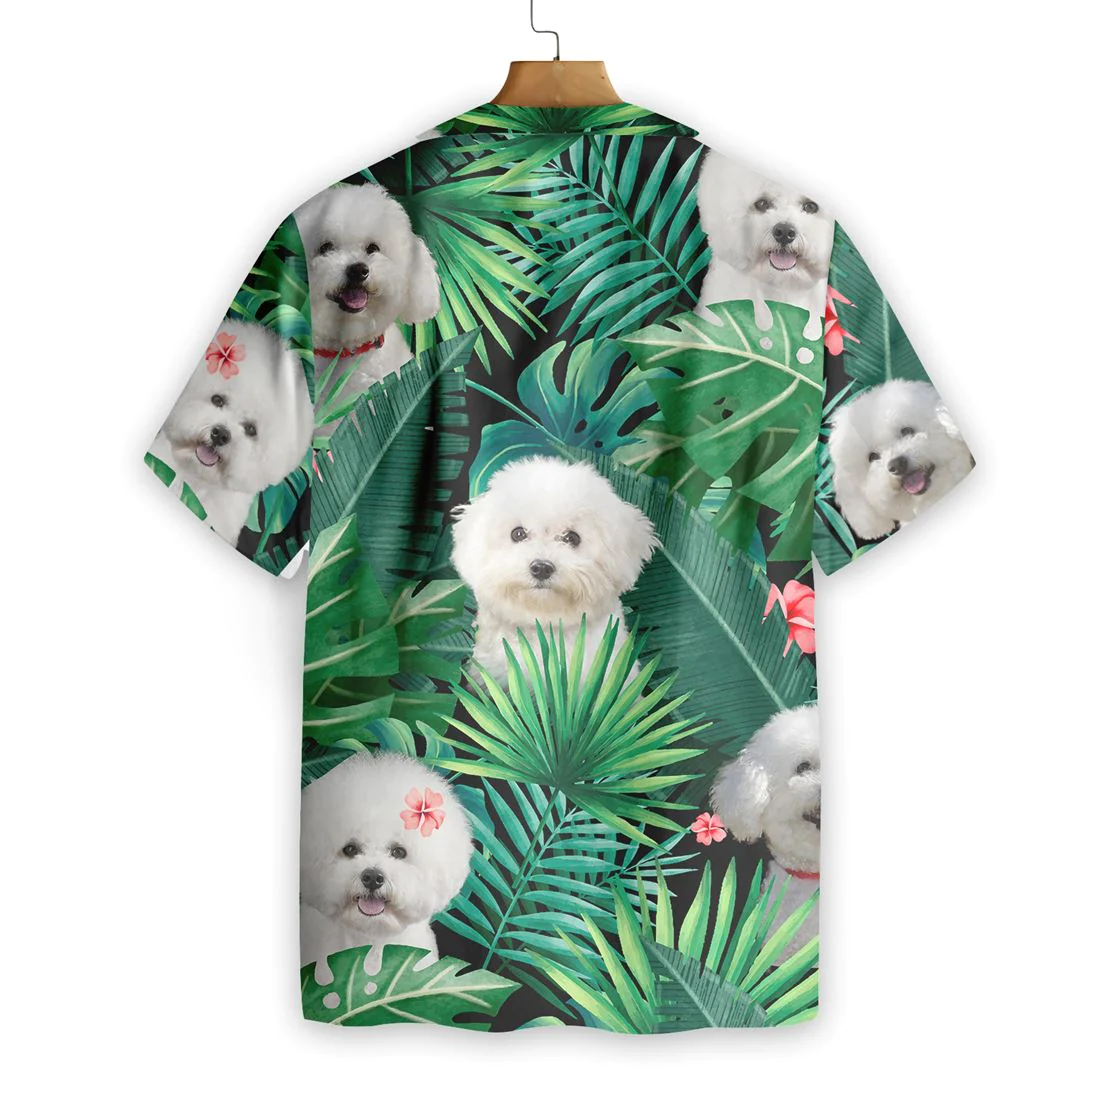 Tropical Bichon Frise Hawaiian Shirt Aloha Shirt For Men and Women